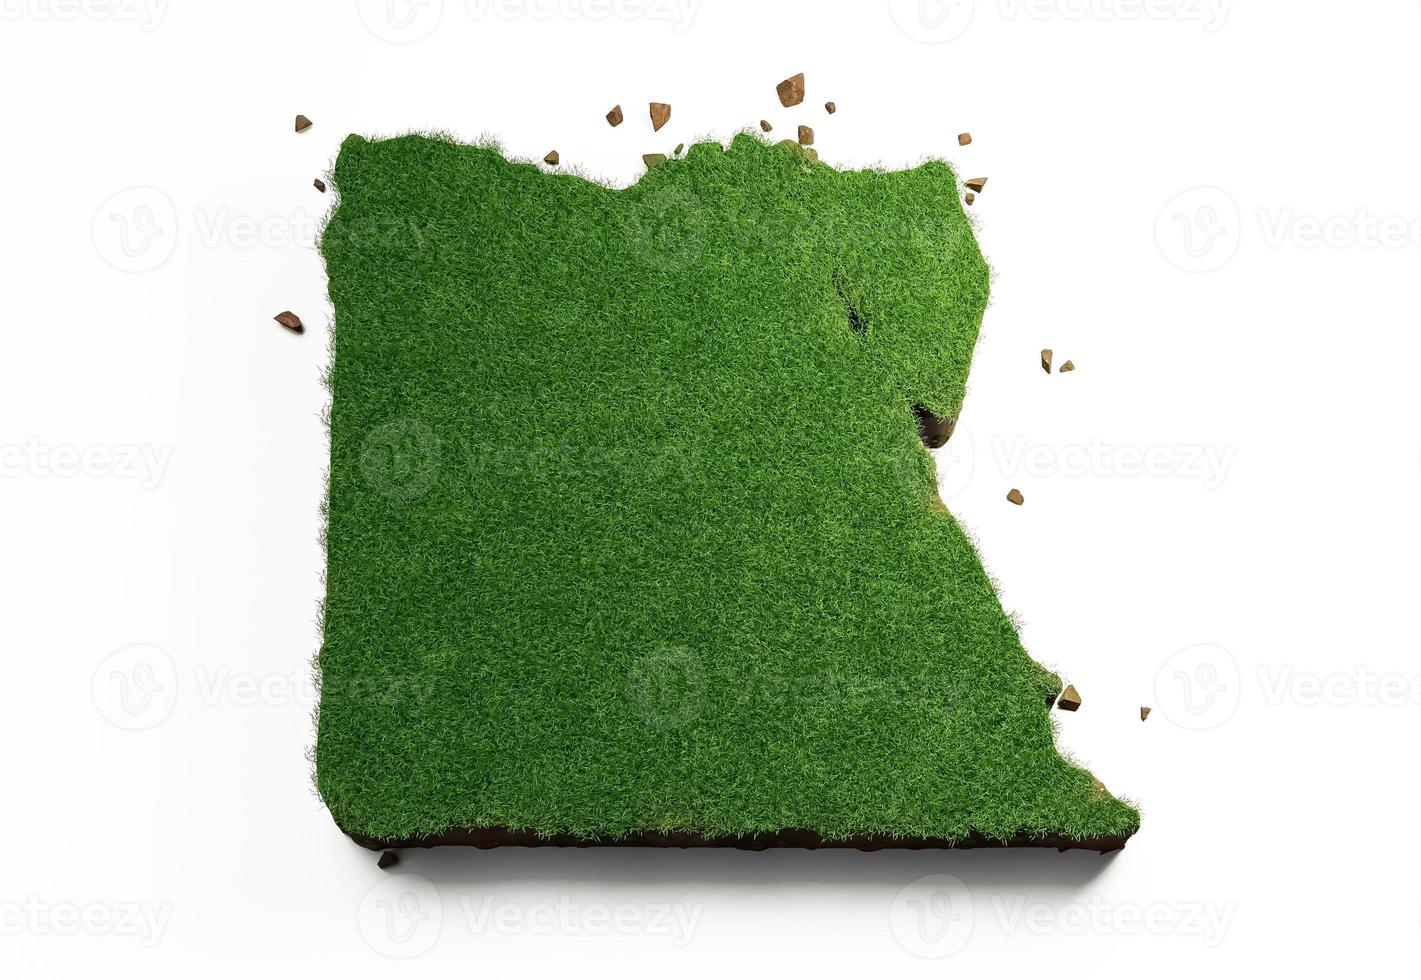 egipto país hierba y suelo textura mapa 3d ilustración foto